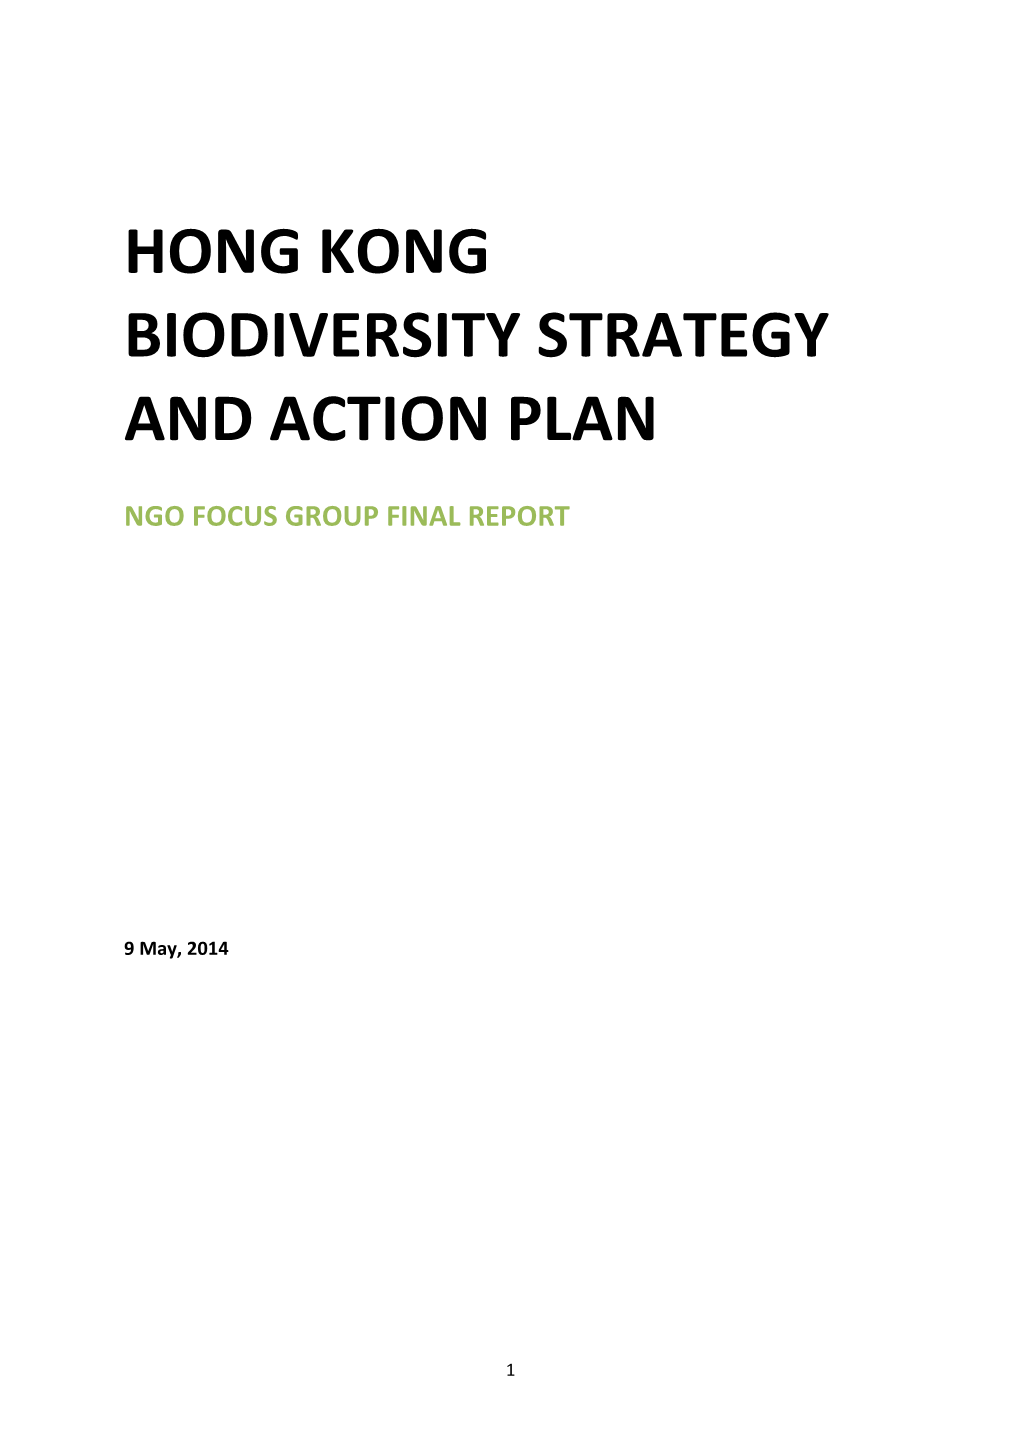 Hong Kong Biodiversity Strategy and Action Plan